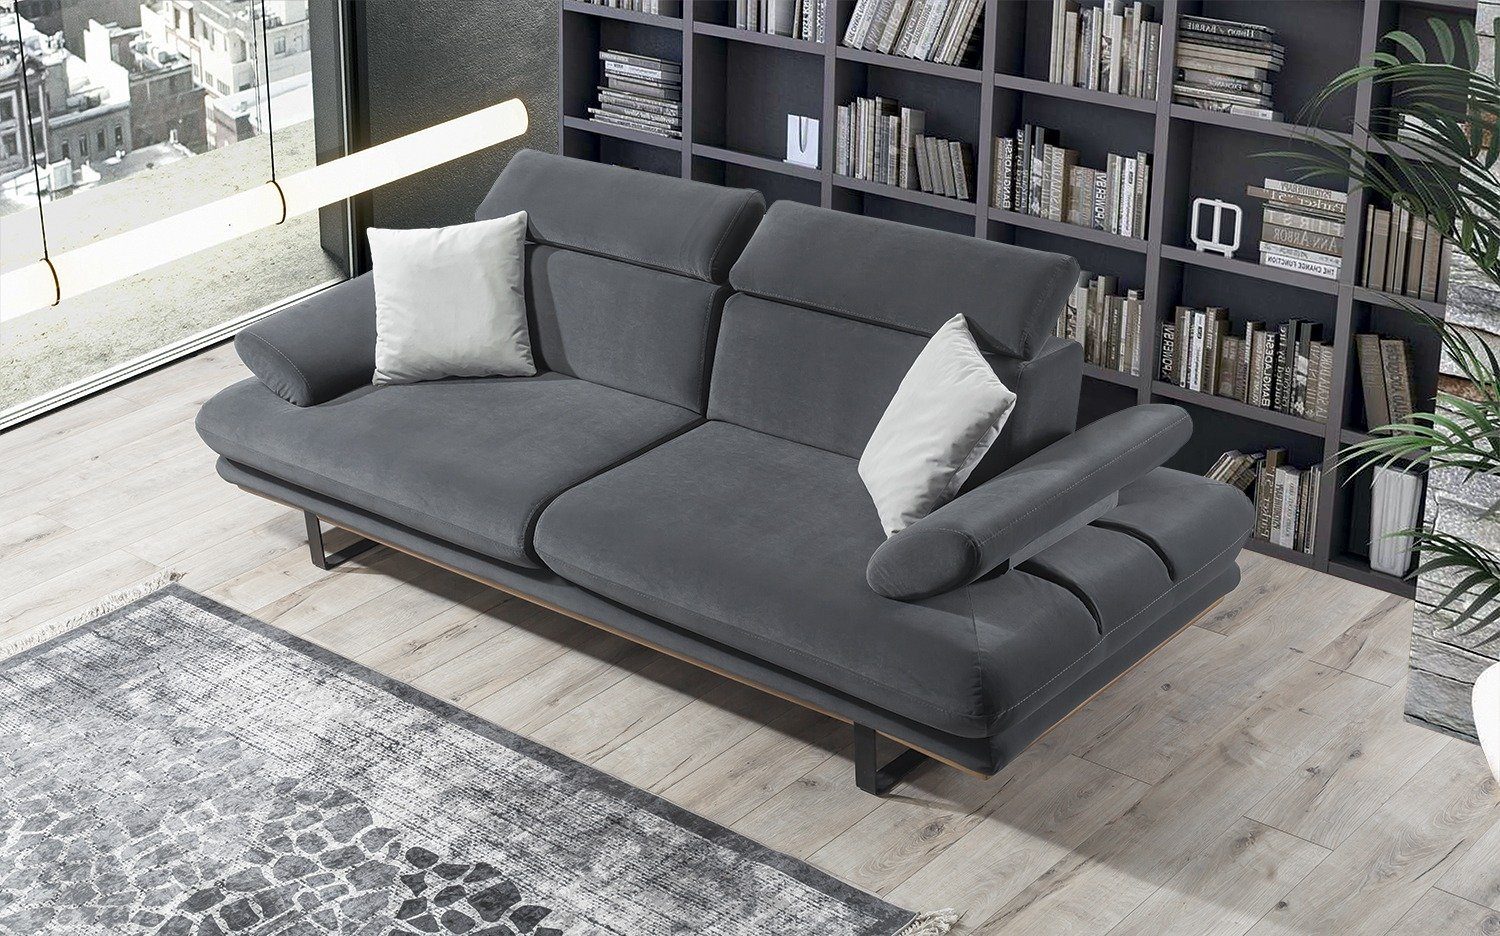 Turkey, in Armlehnenverstellung und Made Möbel stylische Sitztiefen- Villa Sofa 2-Sitzer, Energy, Stk. 1 Dunkelgrau Quality